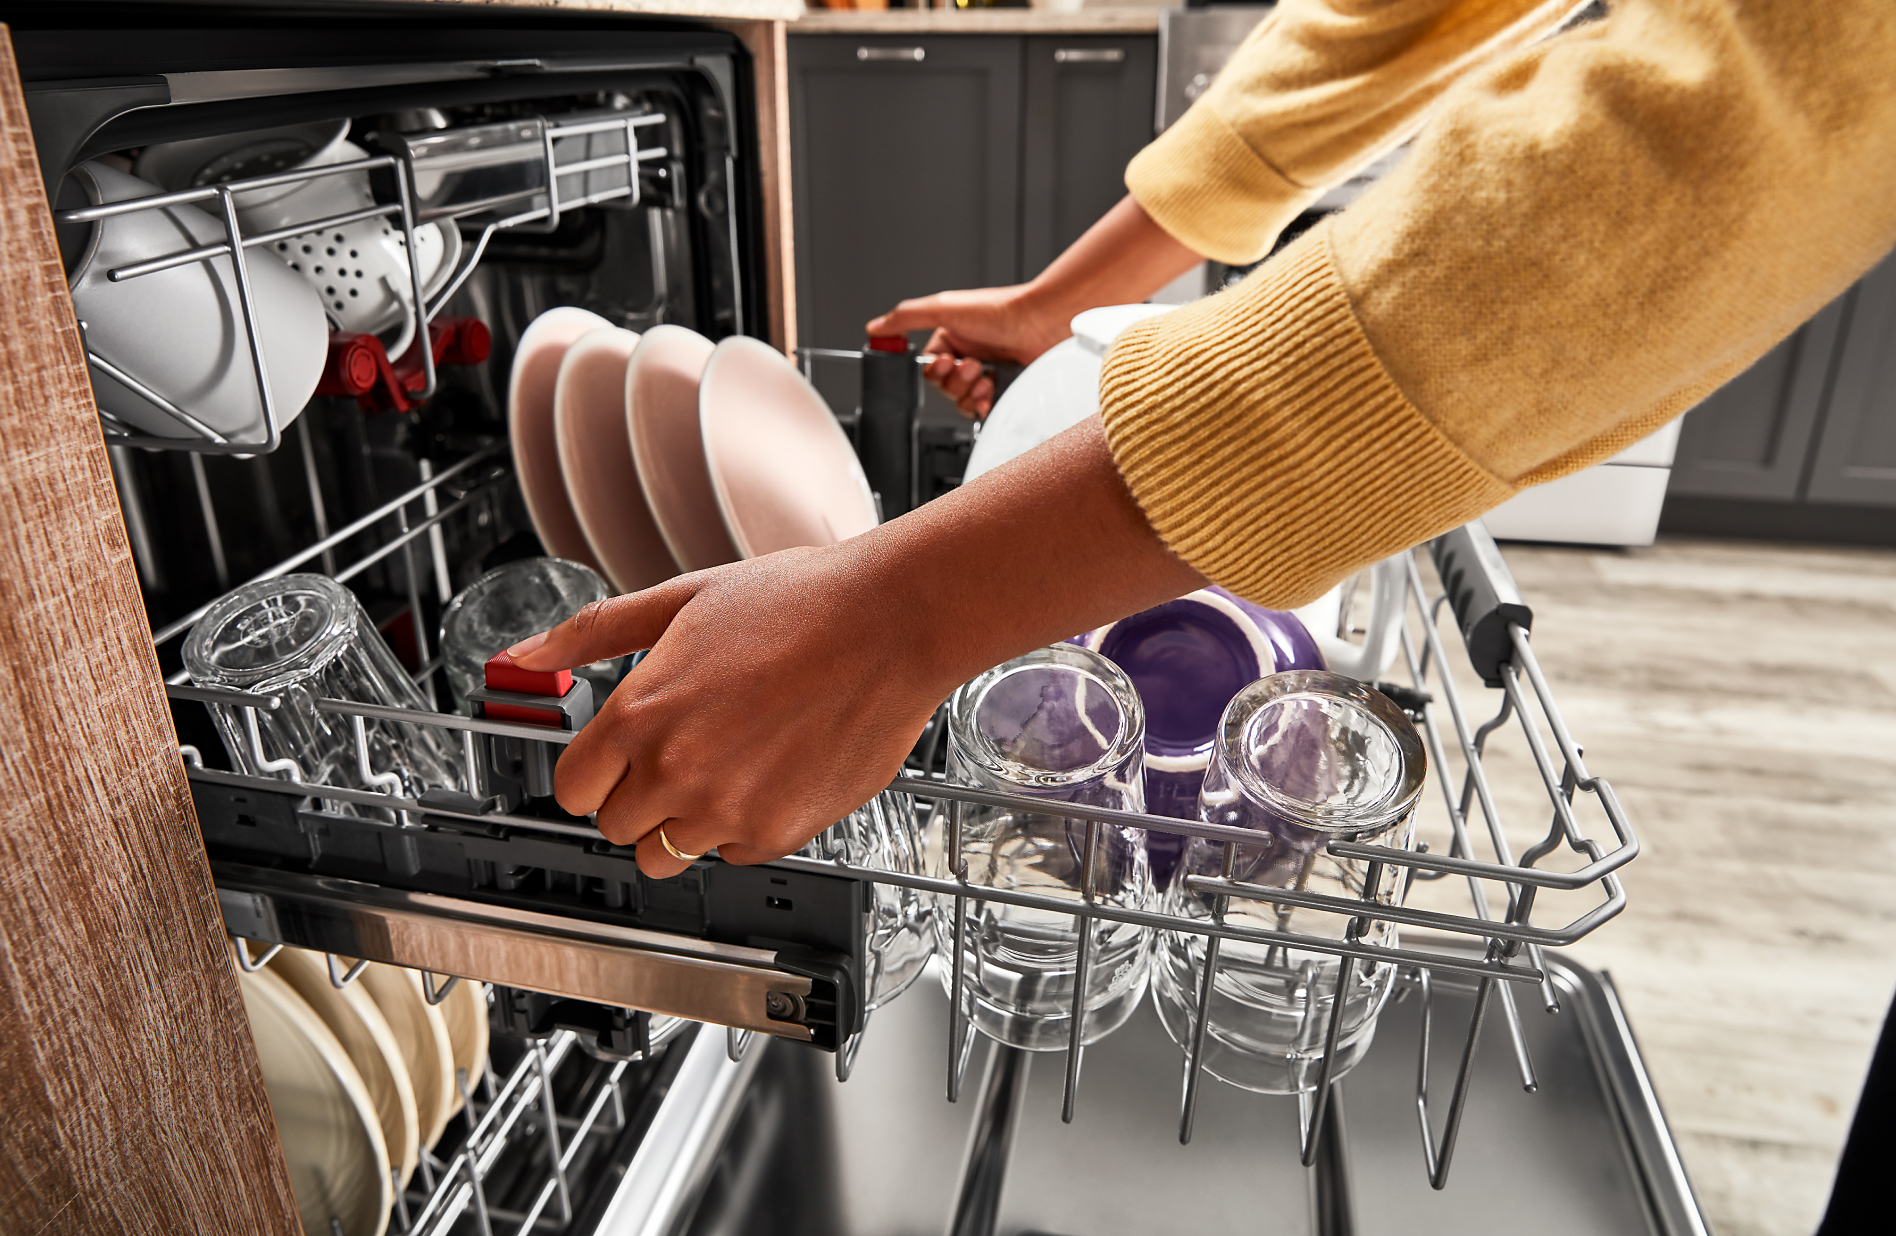 Как отмыть посудомойку. Чистить посудомоечную машину. Робот прочищает посудомойку. Посудомойка для ресторана. Кастрюля в посудомоечной машине.